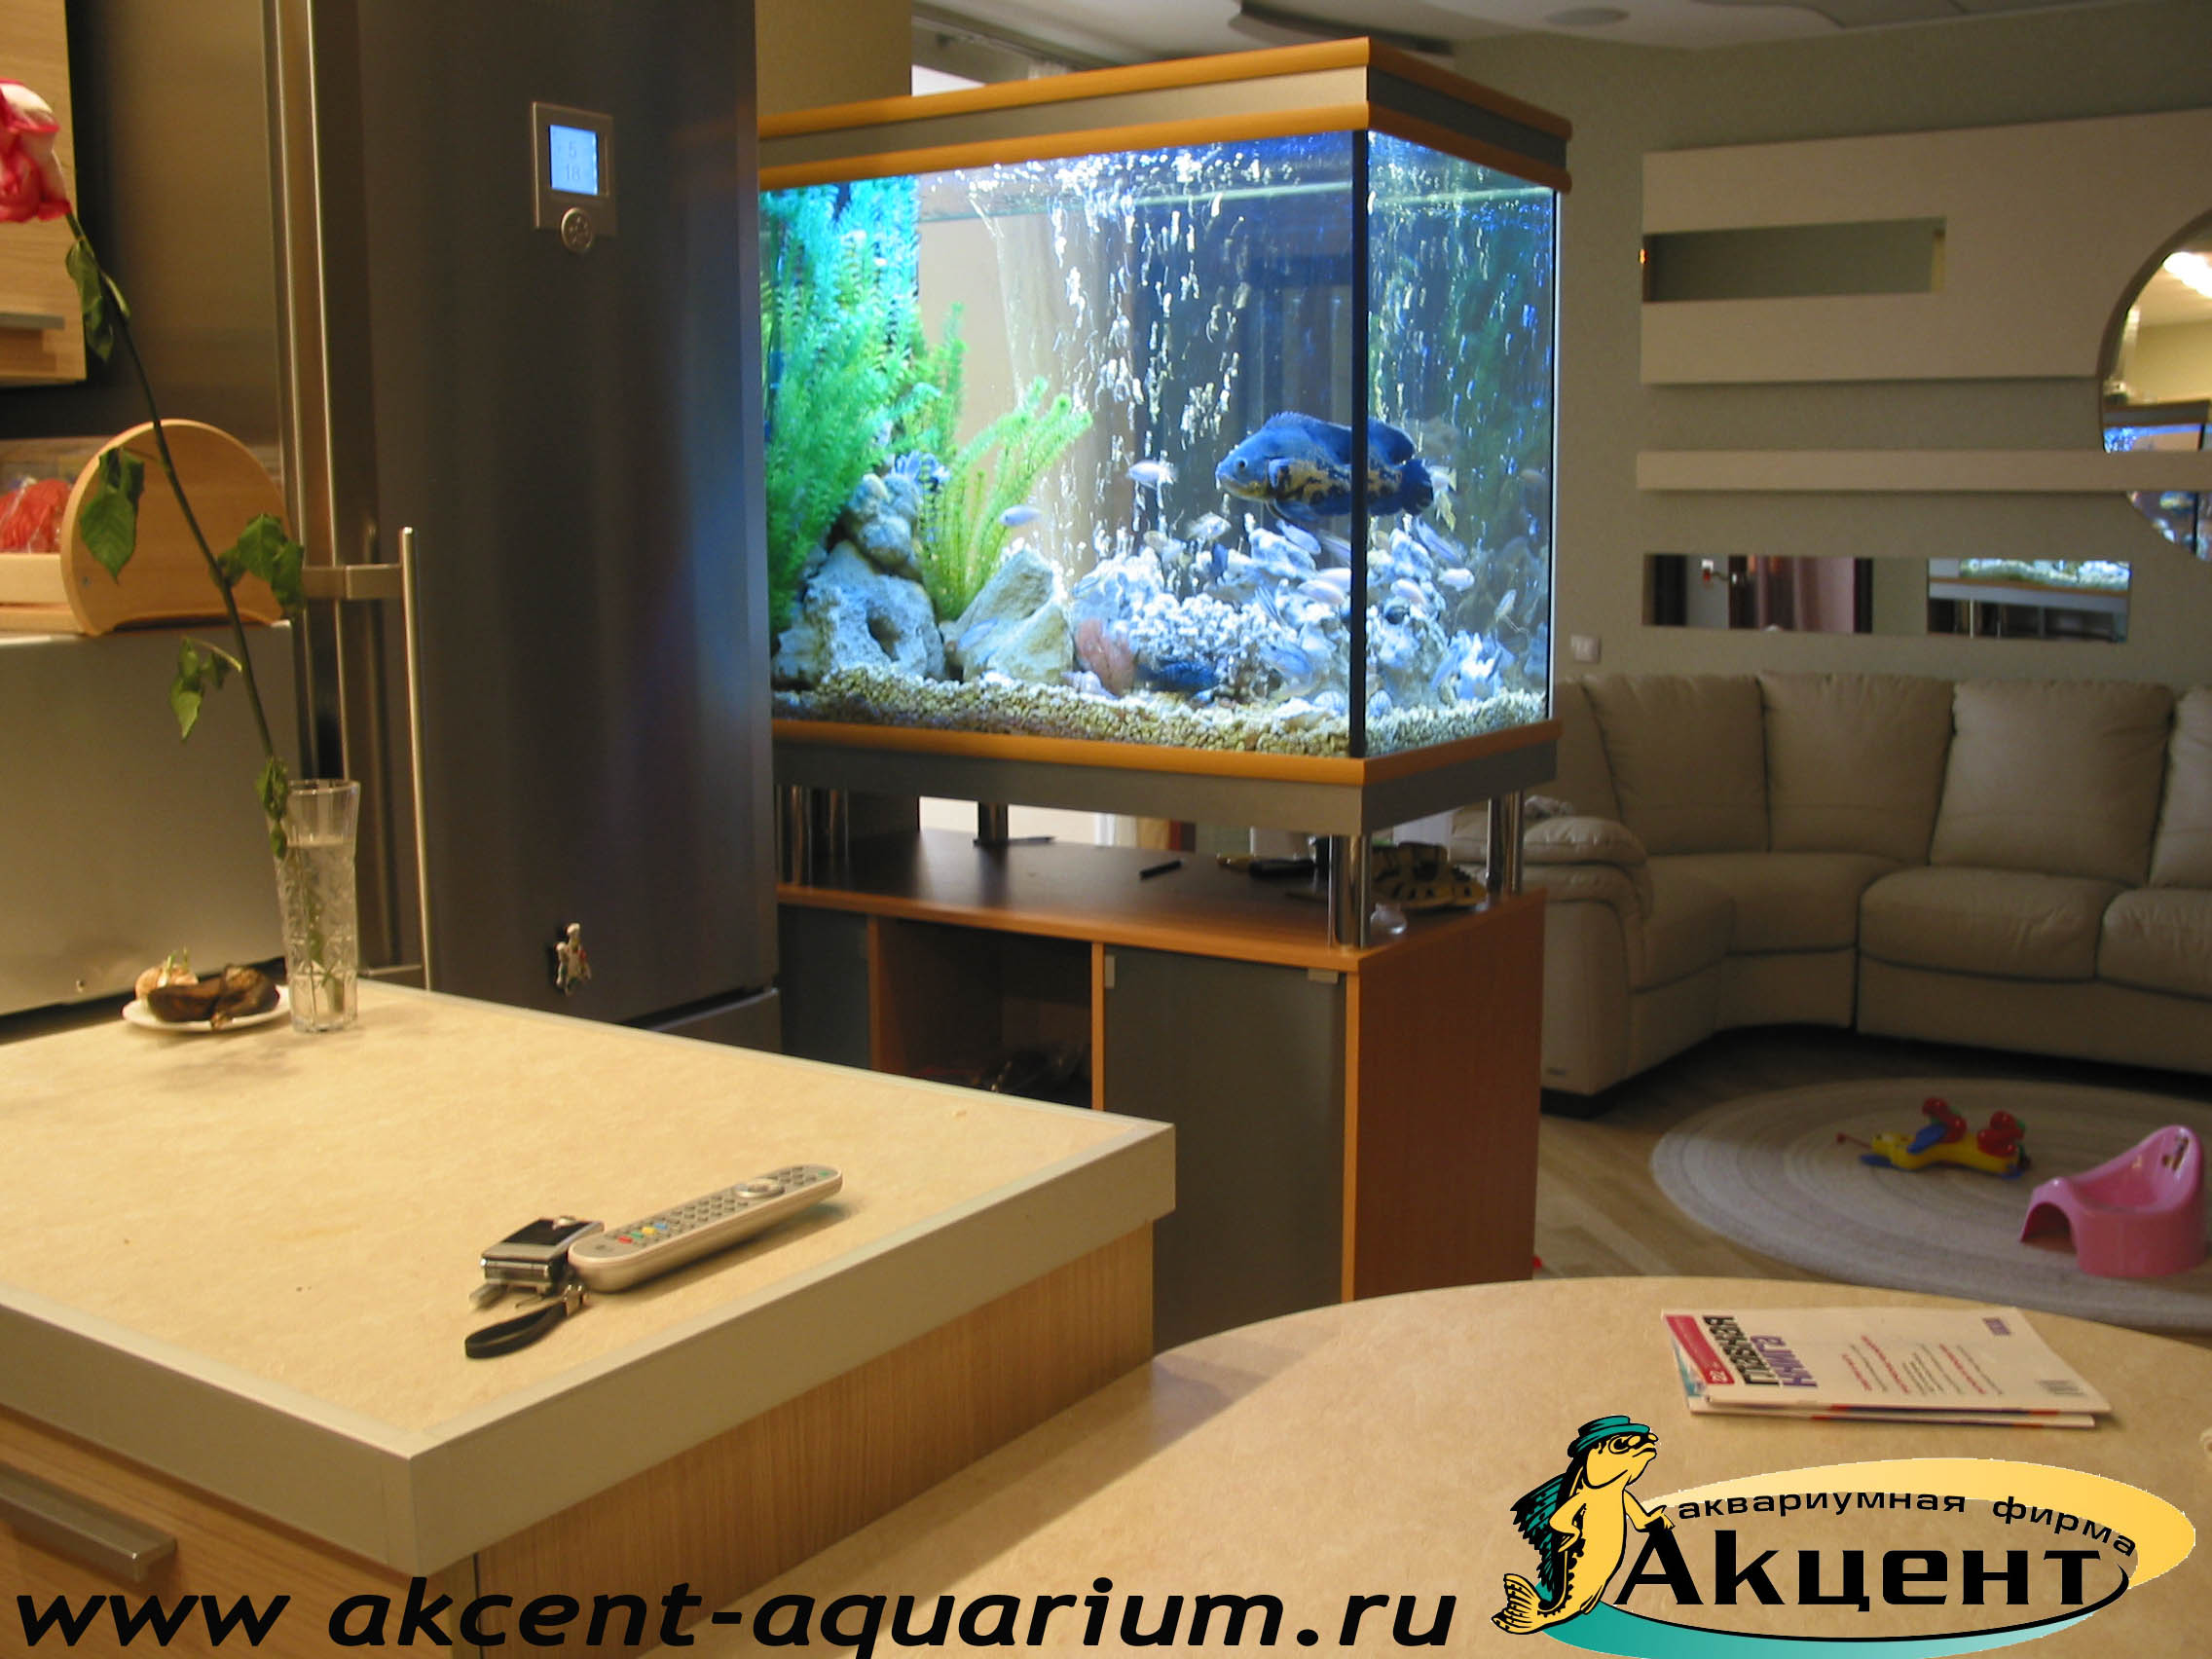 Акцент-Аквариум, аквариум 400 литров просмотровый, вид со стороны кухни